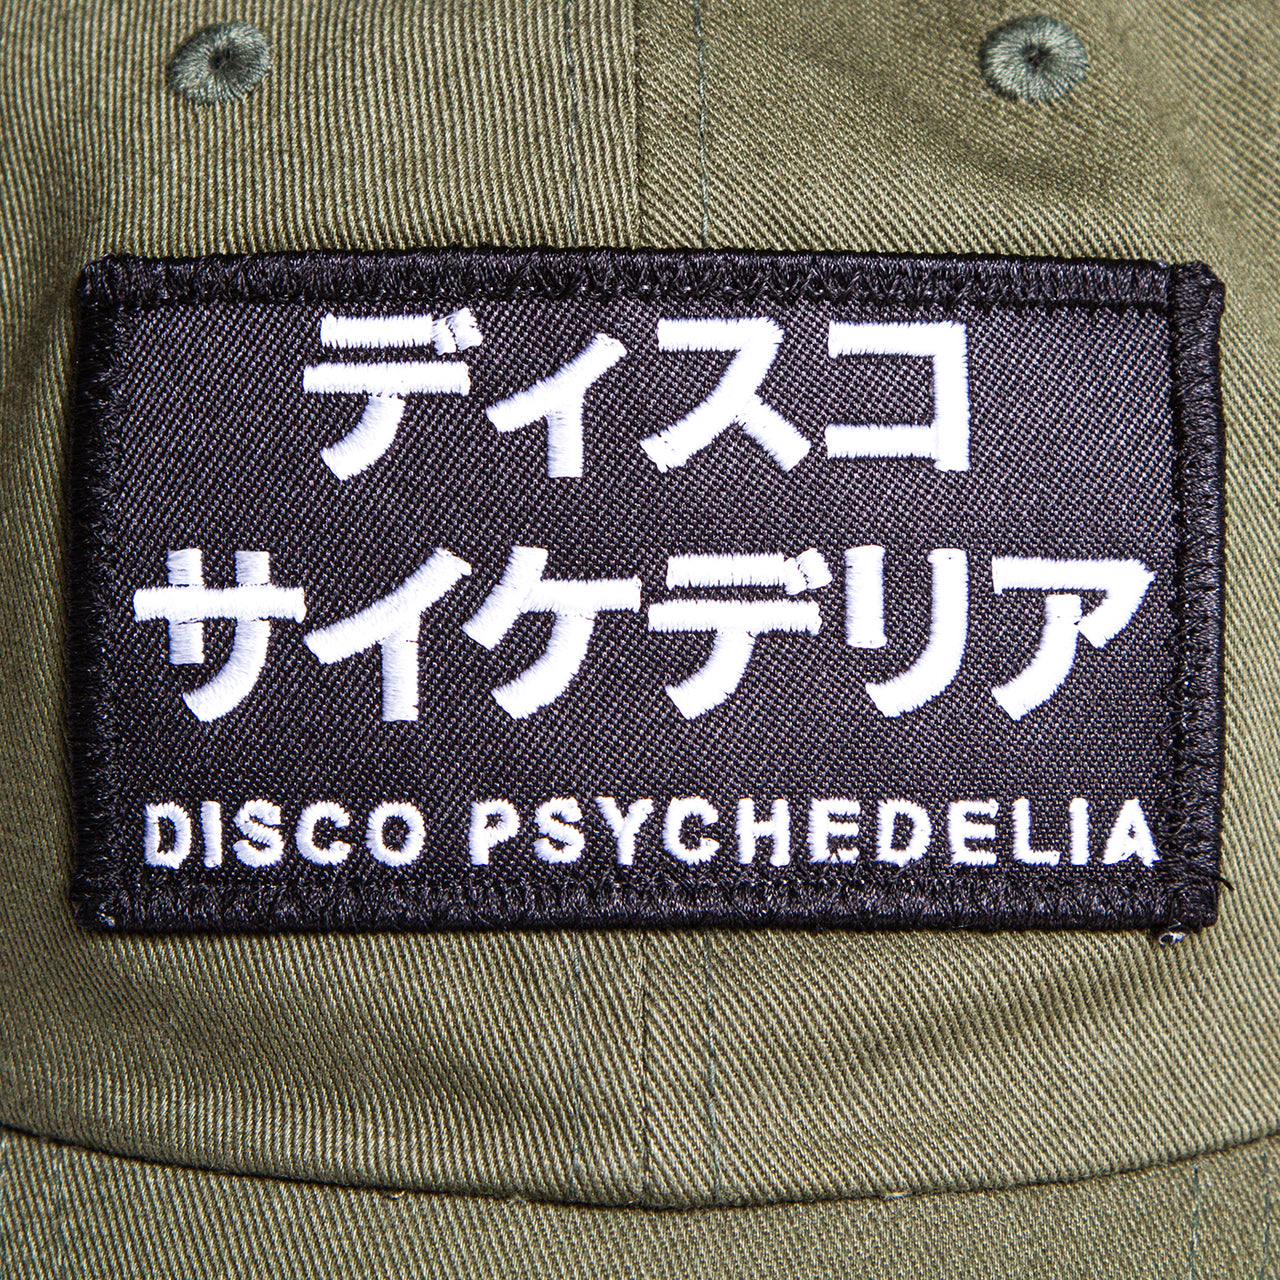 Disco Psychedelia - Trek Cap - Khaki